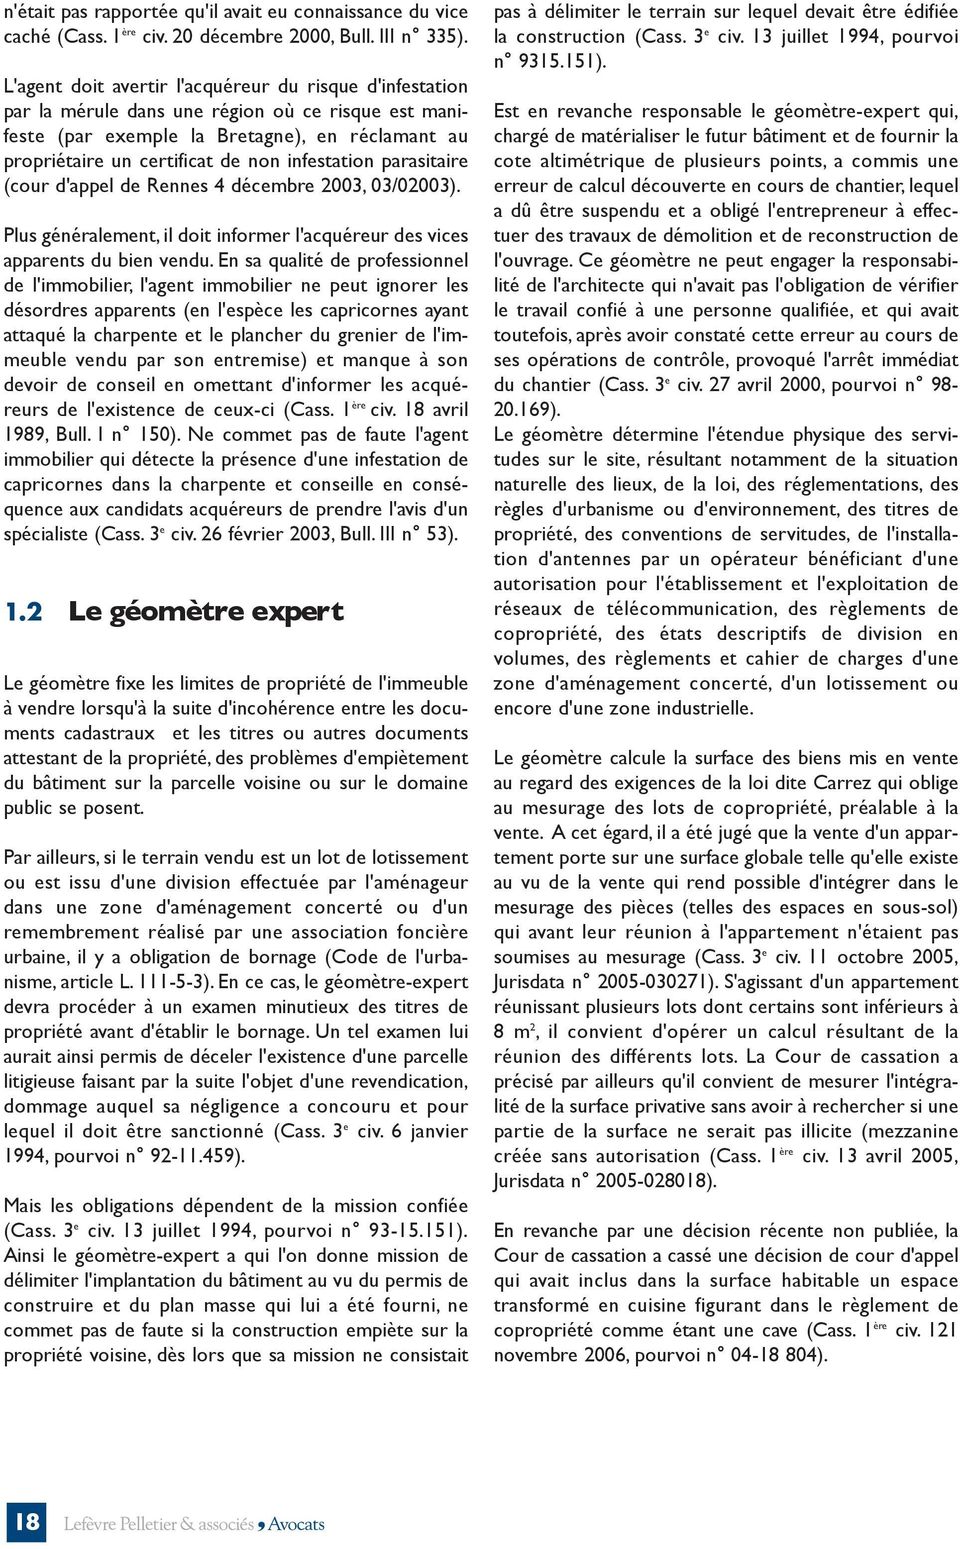 infestation parasitaire (cour d'appel de Rennes 4 décembre 2003, 03/02003). Plus généralement, il doit informer l'acquéreur des vices apparents du bien vendu.